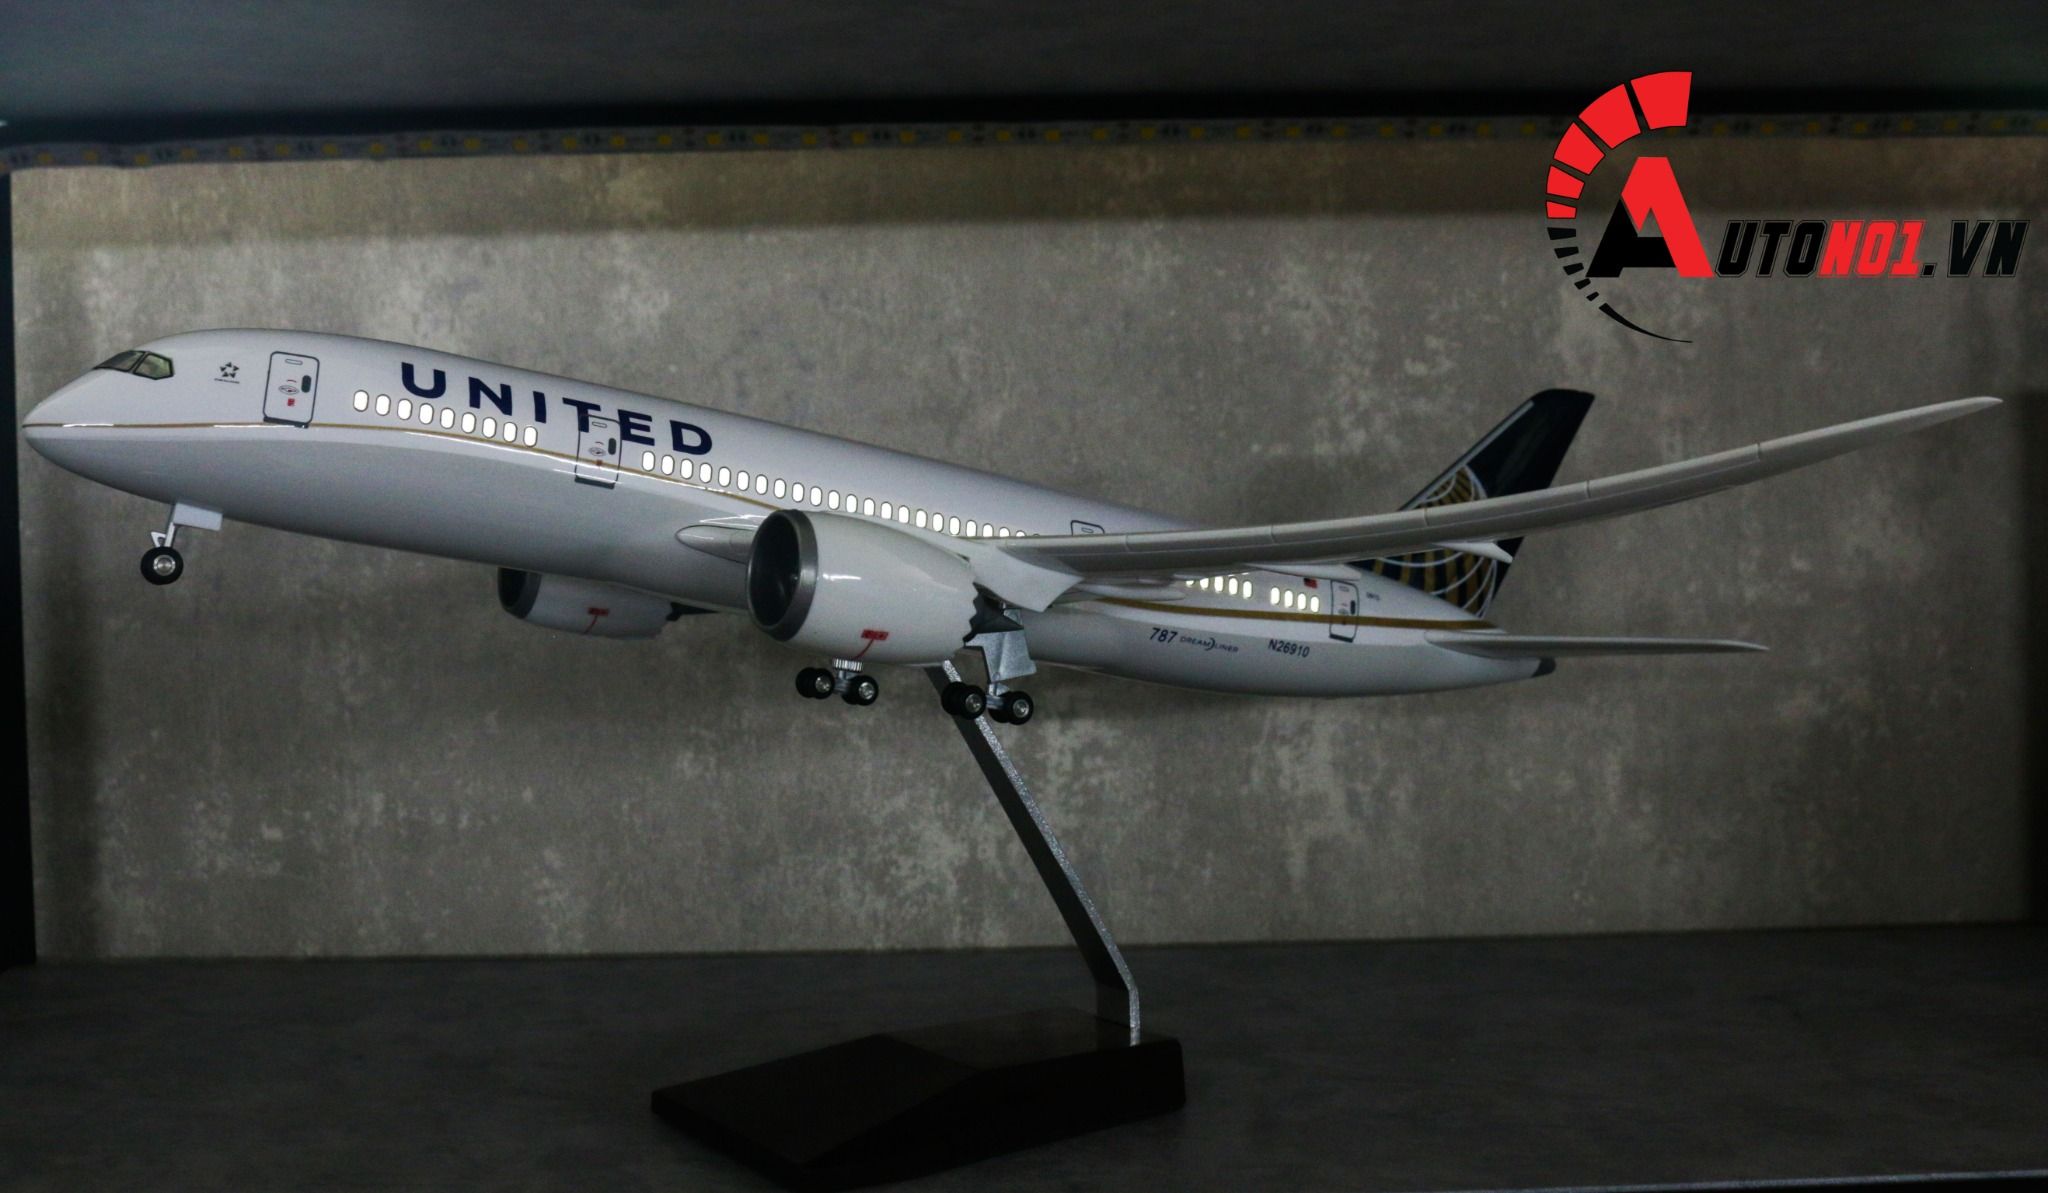  Mô hình máy bay American United Boeing B787 47cm tỉ lệ 1:157 có đèn led tự động theo tiếng vỗ tay hoặc chạm MB47024 